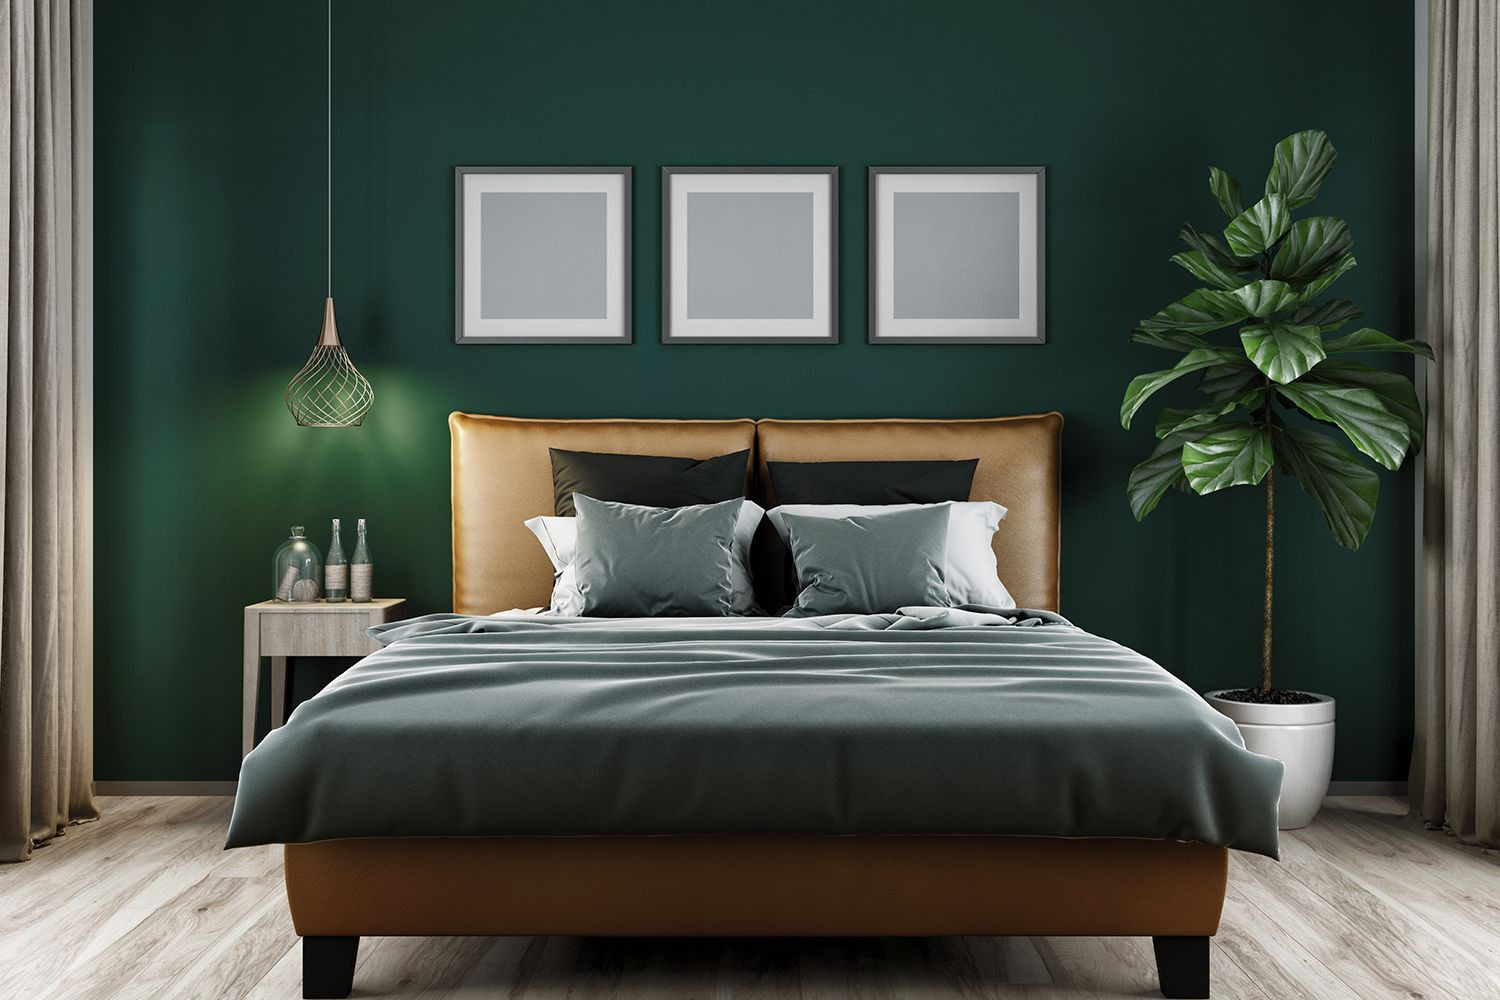 Dark Green Bedroom Walls
 MODERN BEDROOM INSPIRATION IDEAS